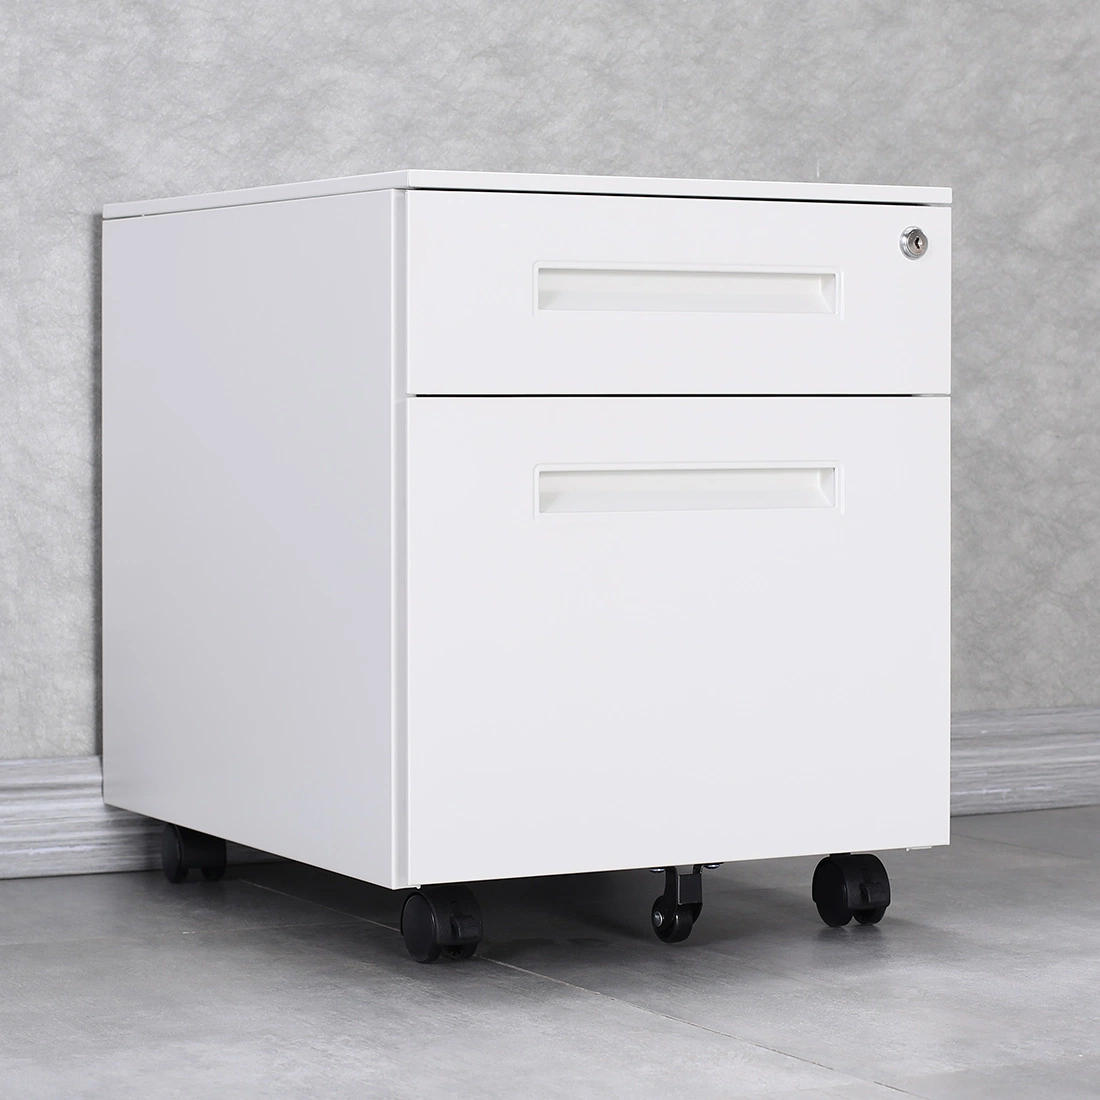 Gdlt Office Furniture Steel Mobile File Cabinet 2 Drawers Filling Cabinets Mobile Pedestal Drawer